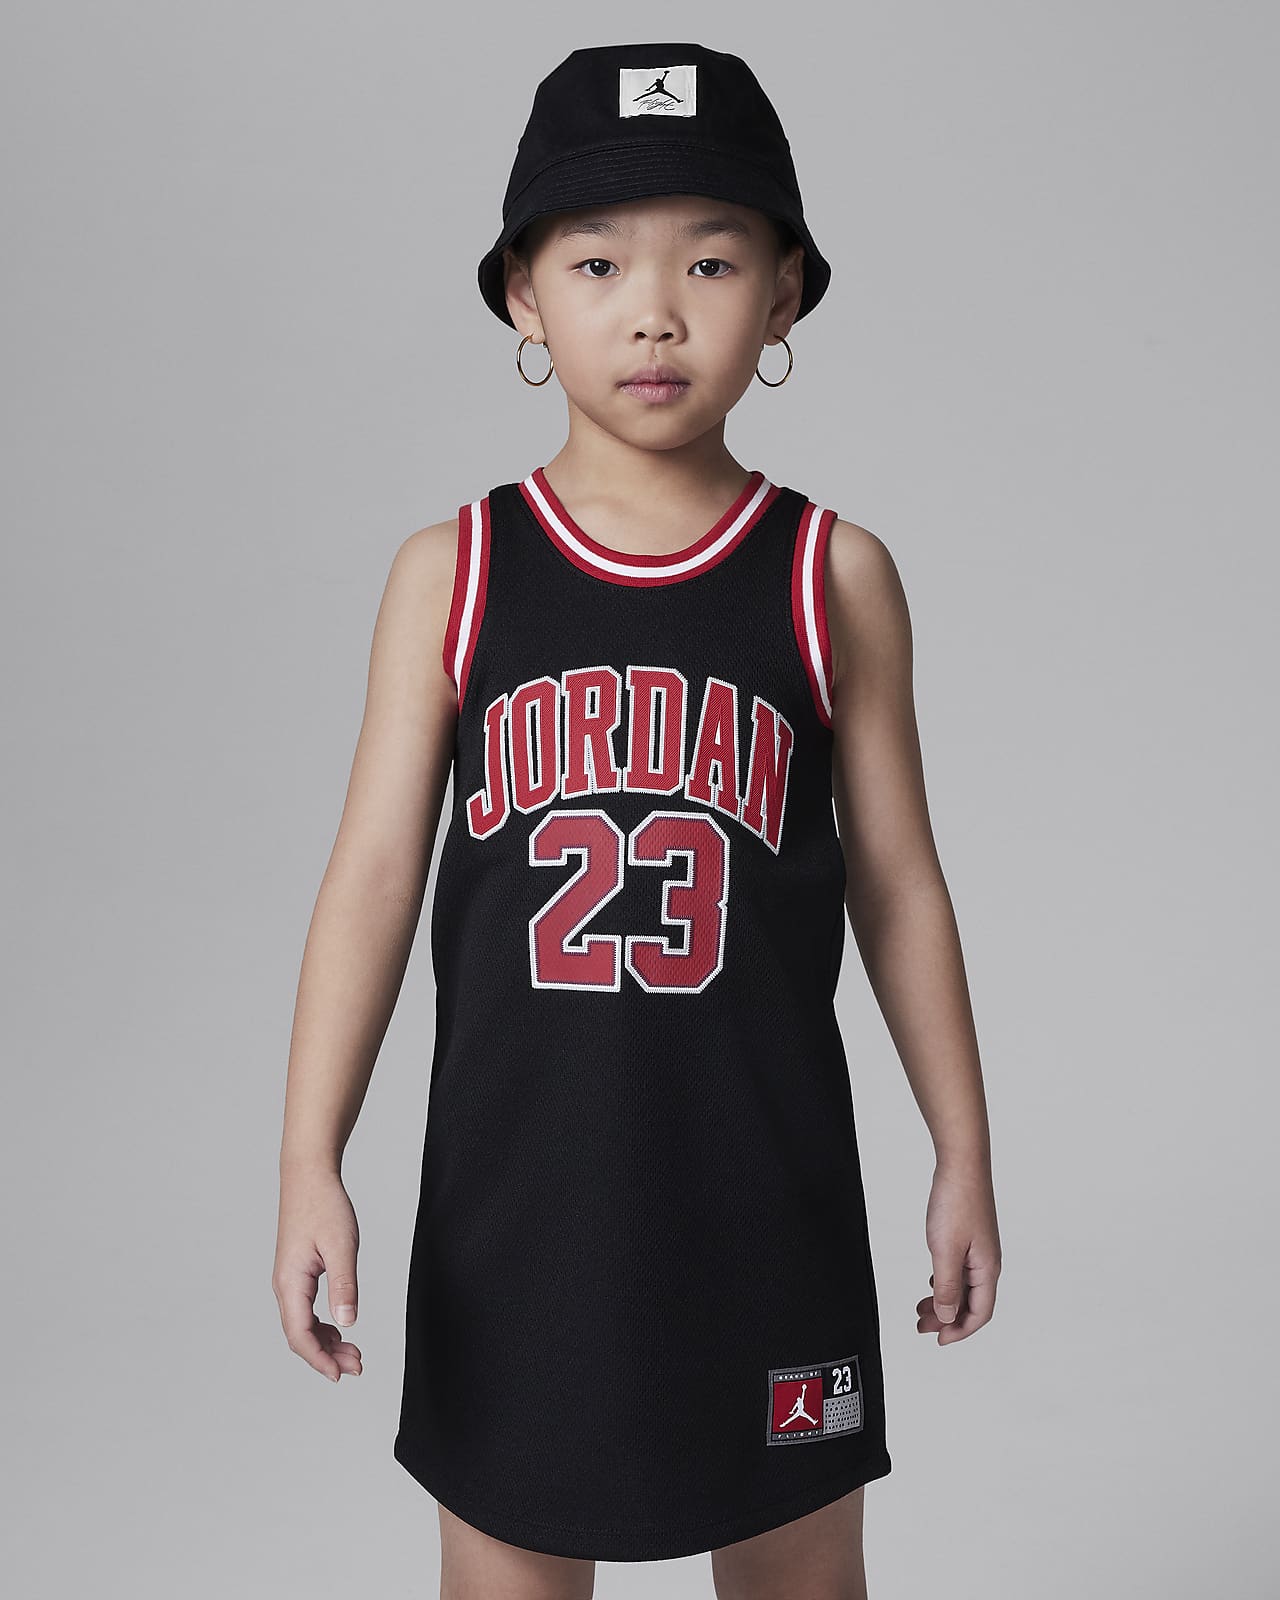 Jordan 23 Jersey Vestit - Nen/a petit/a